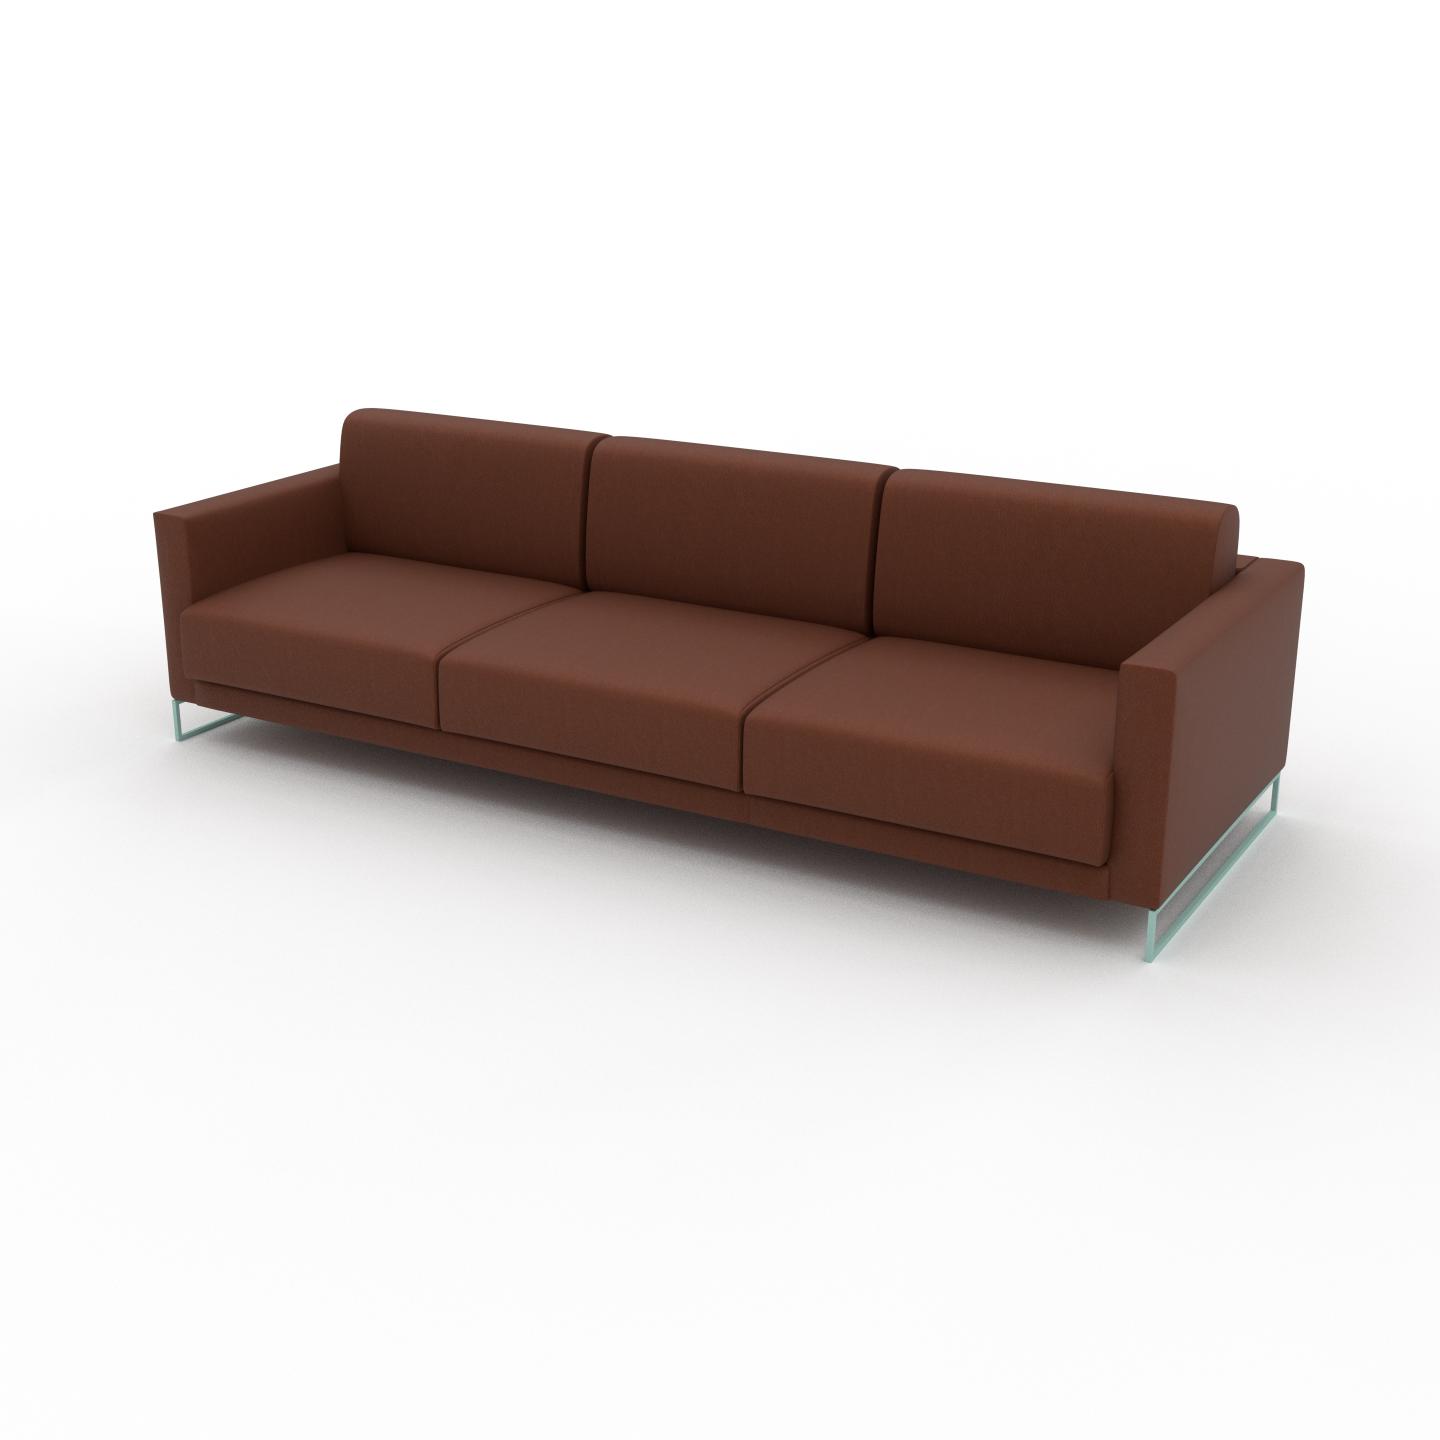 MYCS Sofa Cognac - Moderne Designer-Couch: Hochwertige Qualität, einzigartiges Design - 264 x 75 x 98 cm, Komplett anpassbar